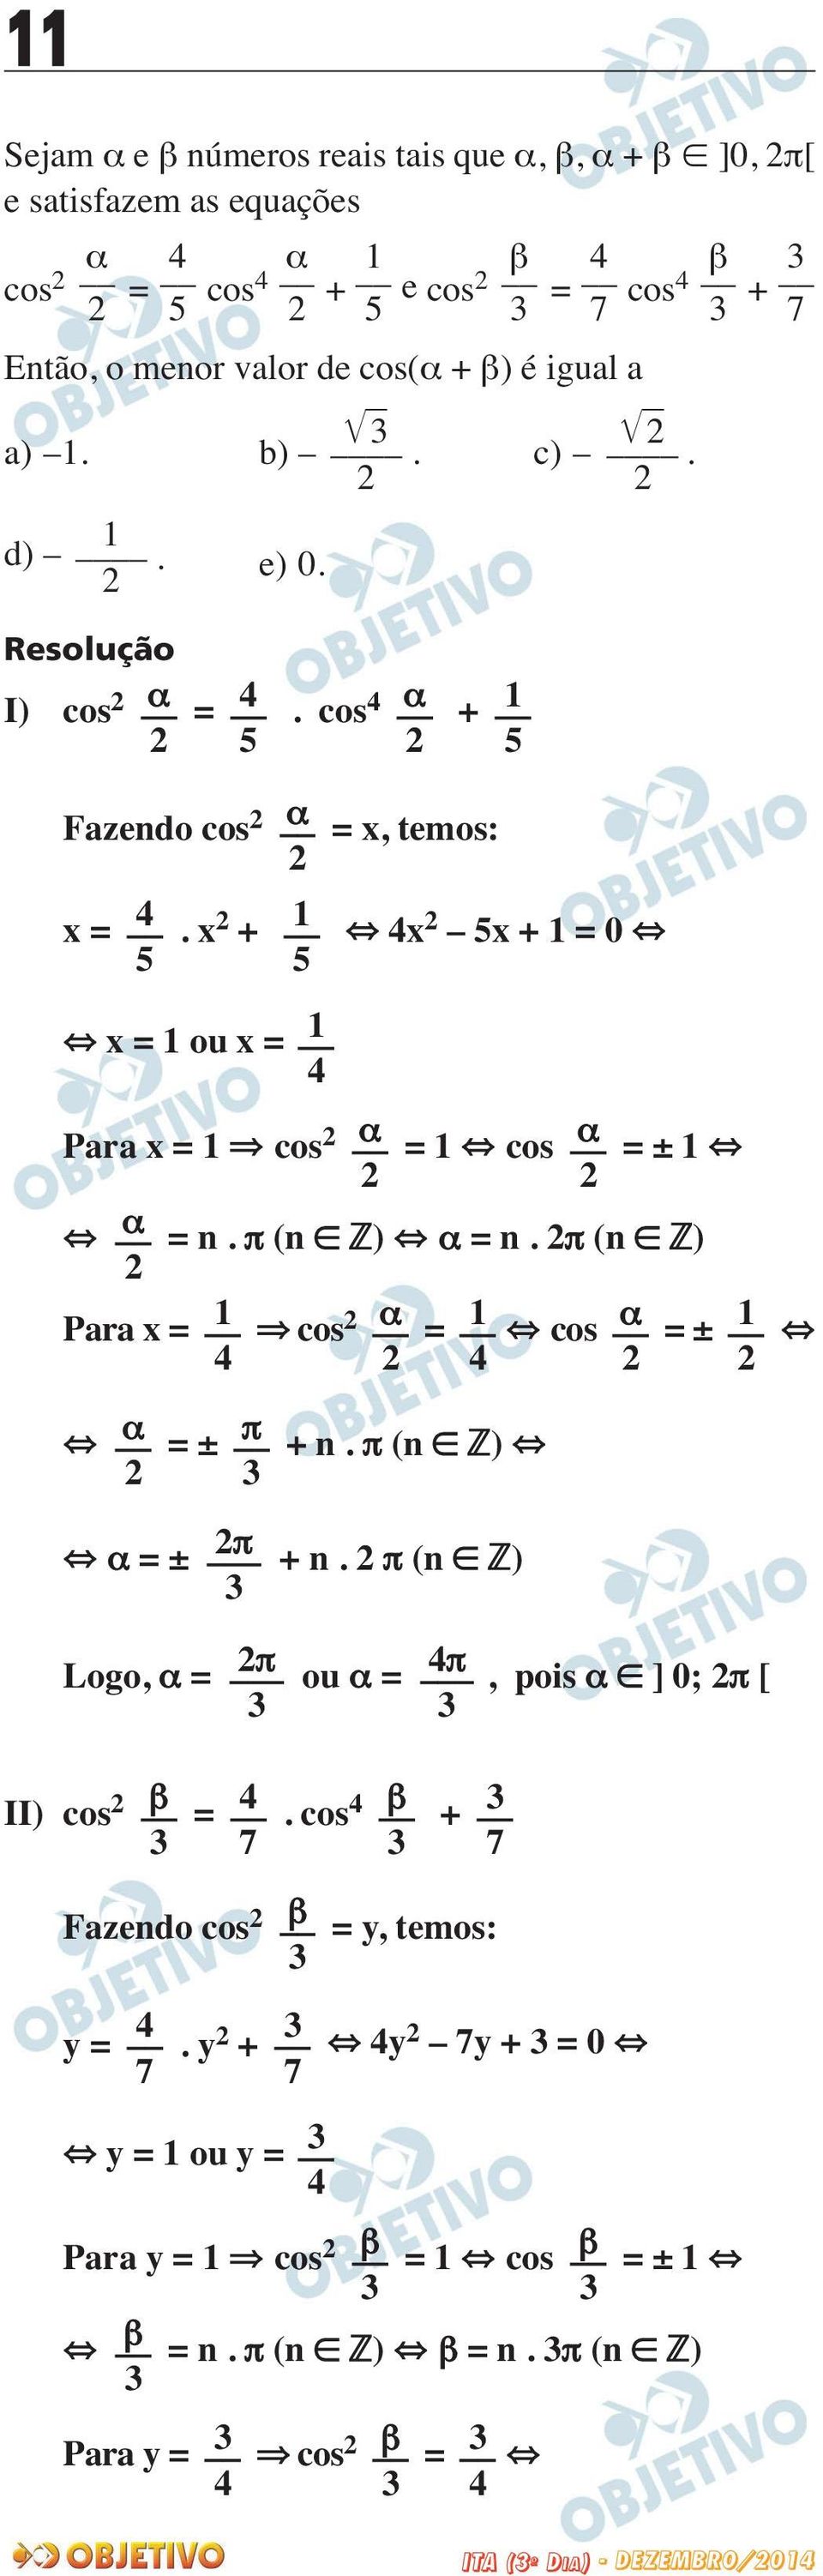 π (n ) α = n. π (n ) Para x = cos α = cos α = ± α = ± π + n. π (n ) α = ± π + n. π (n ) Logo, α = π ou α = π, pois α ] 0; π [ II) cos β = 7.